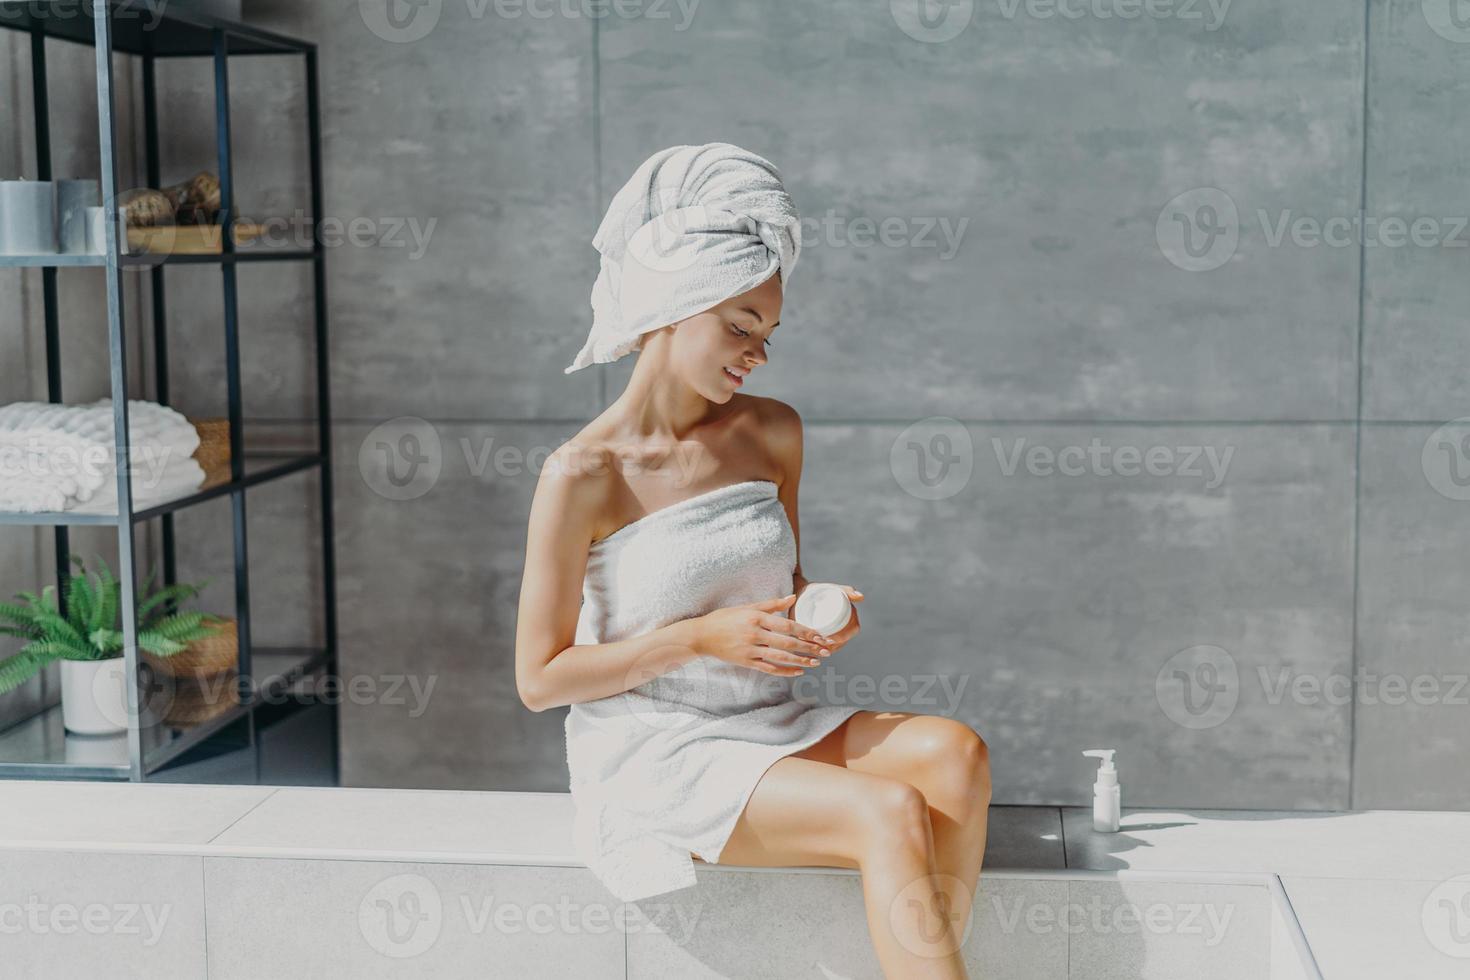 jovem europeia relaxada aplica creme hidratante nas pernas depois de tomar banho senta-se envolta em toalha no banheiro, desfruta de tratamentos de beleza, usa produtos cosméticos para uma pele saudável. conceito de higiene foto